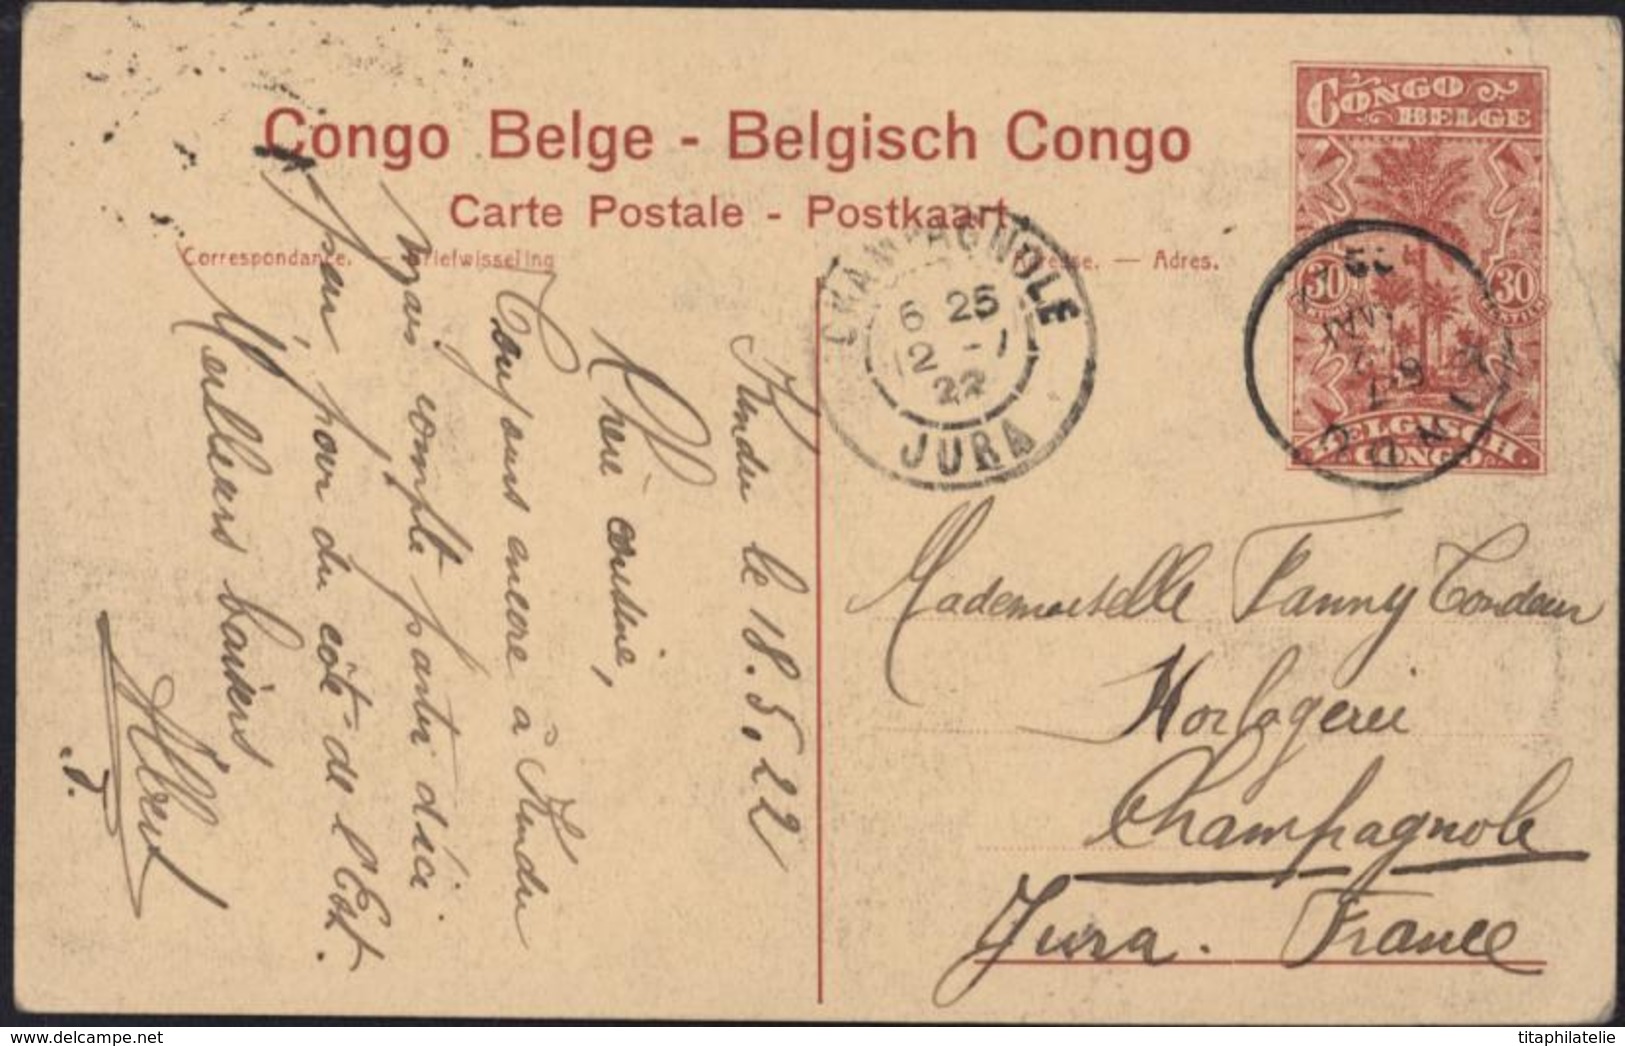 Entier 30c Palmiers CAD Kindu 6 7 22 Mai 1922 CPA Congo Belge La Ligne Aérienne Roi Albert Mr Franck Hydravion Gombe - Entiers Postaux